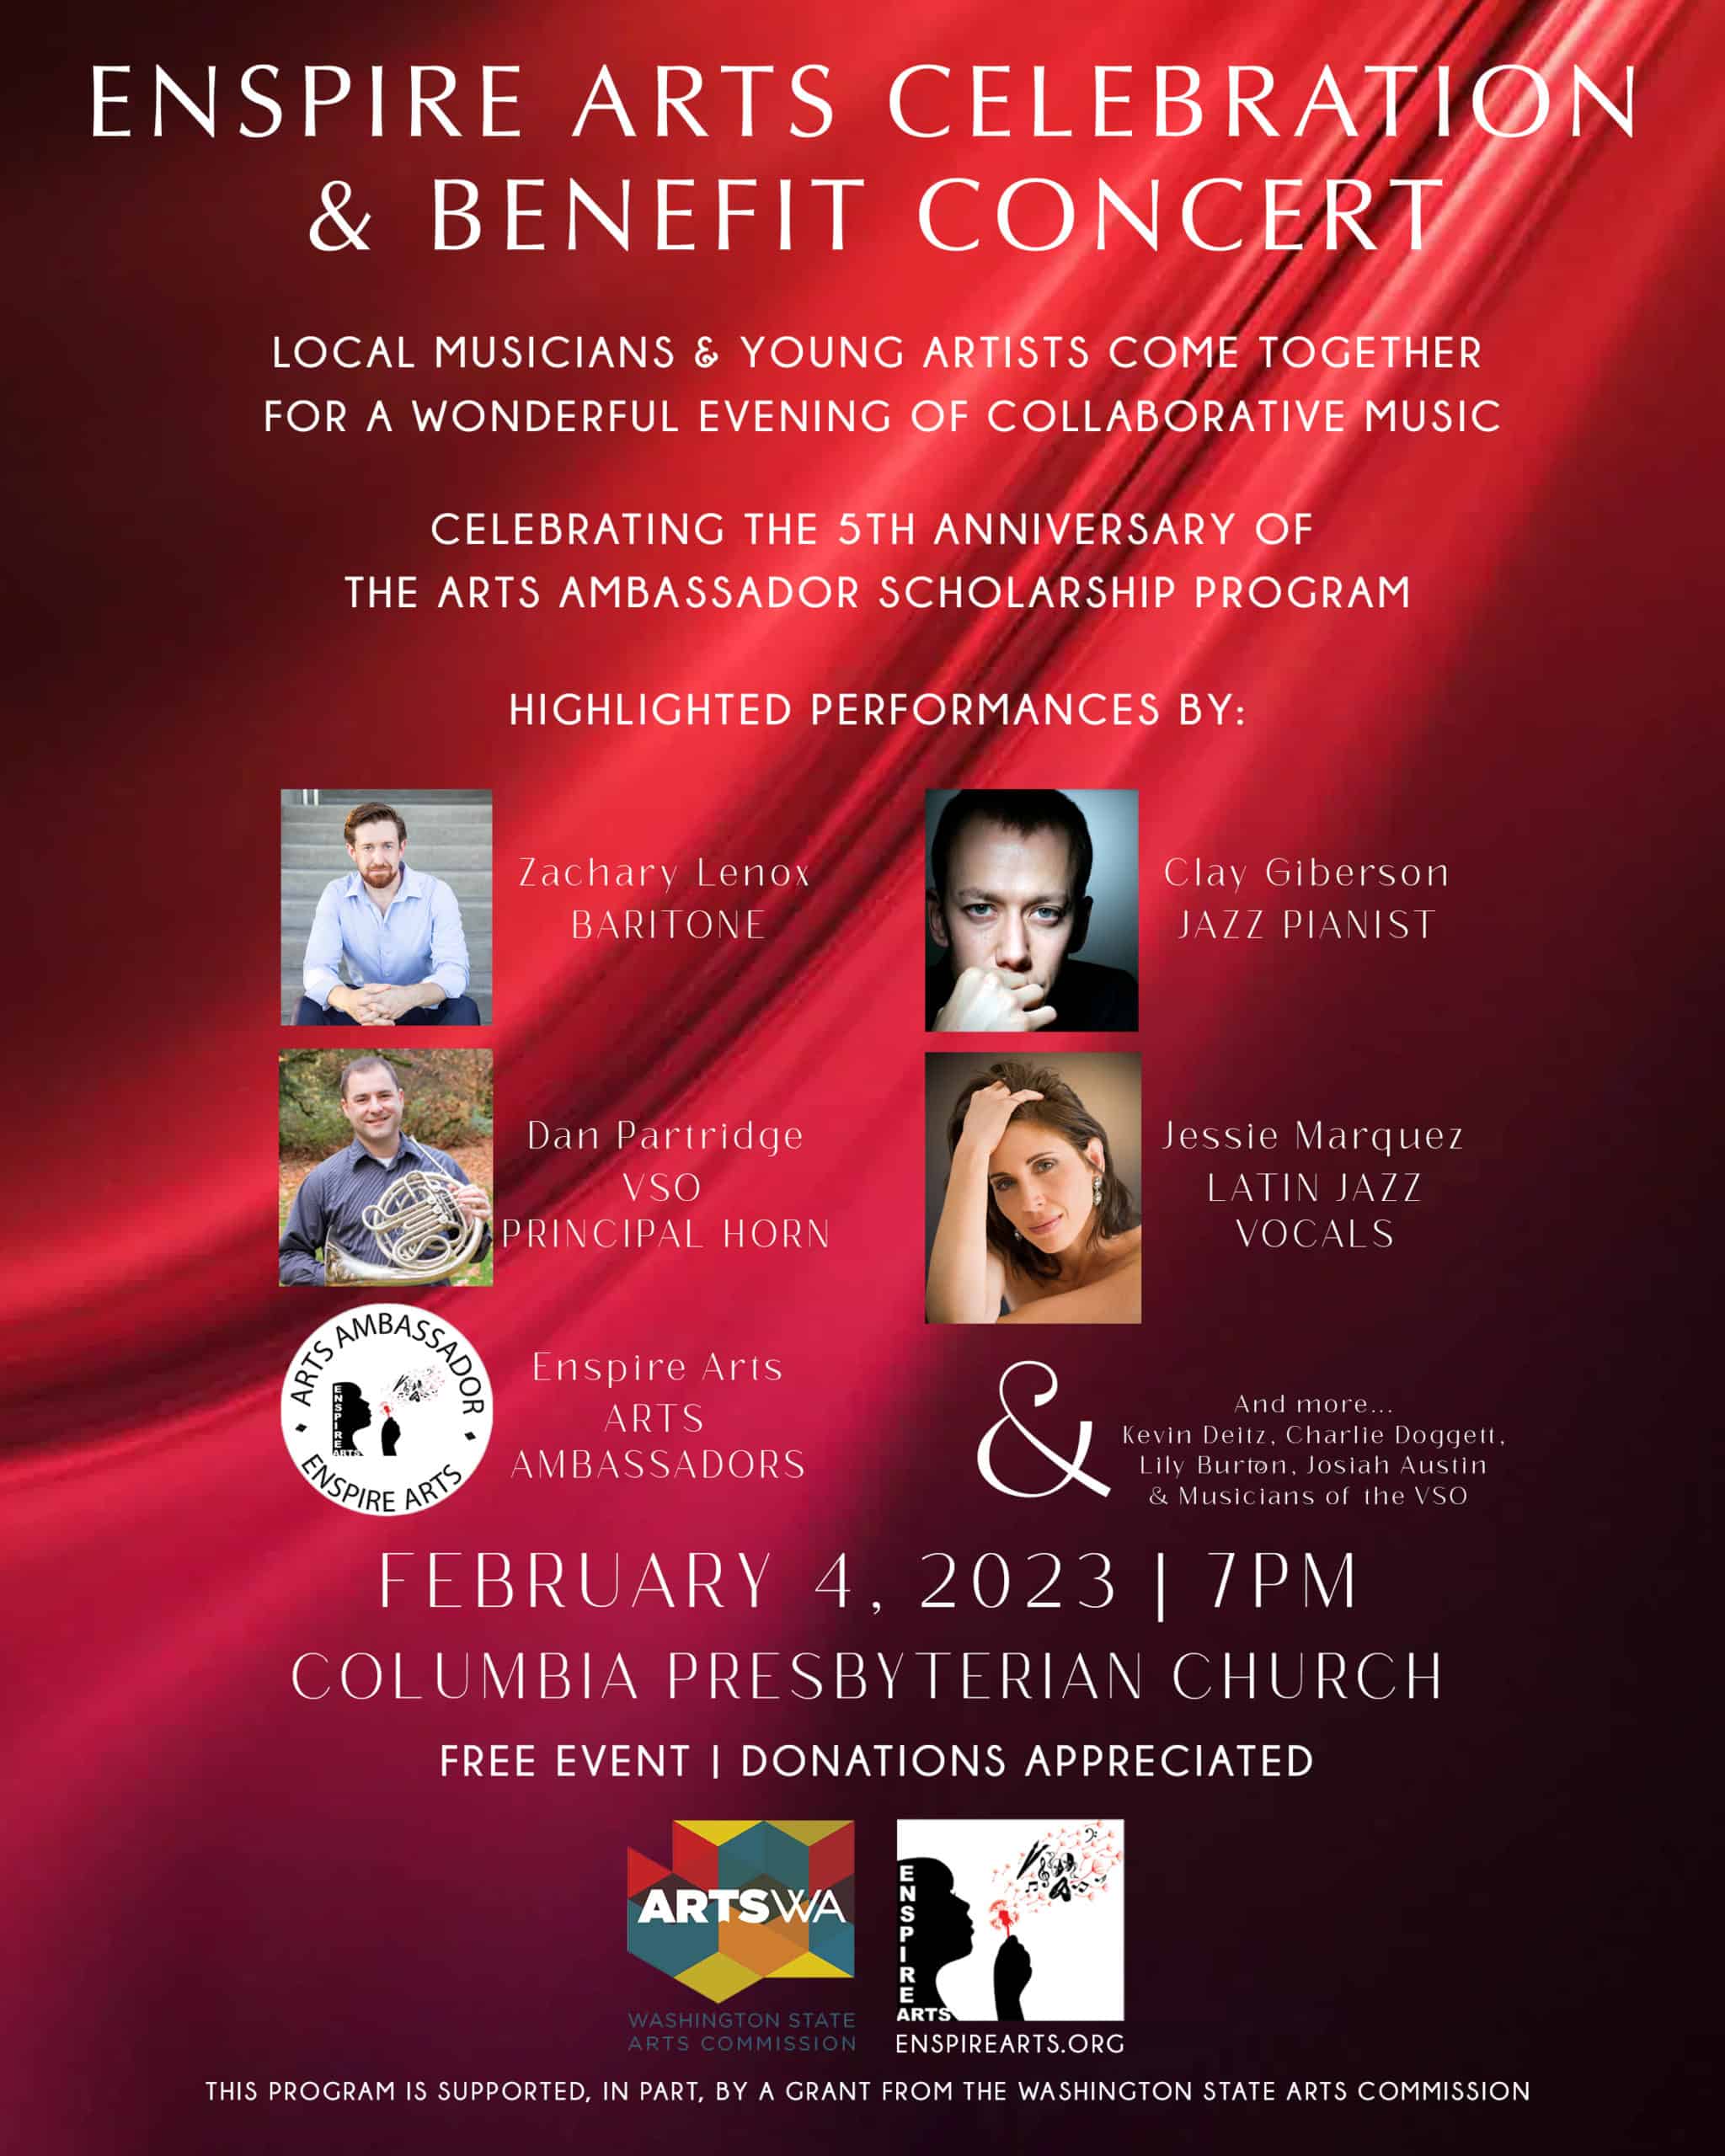 Enspire Arts Celebration & Benefit Concert